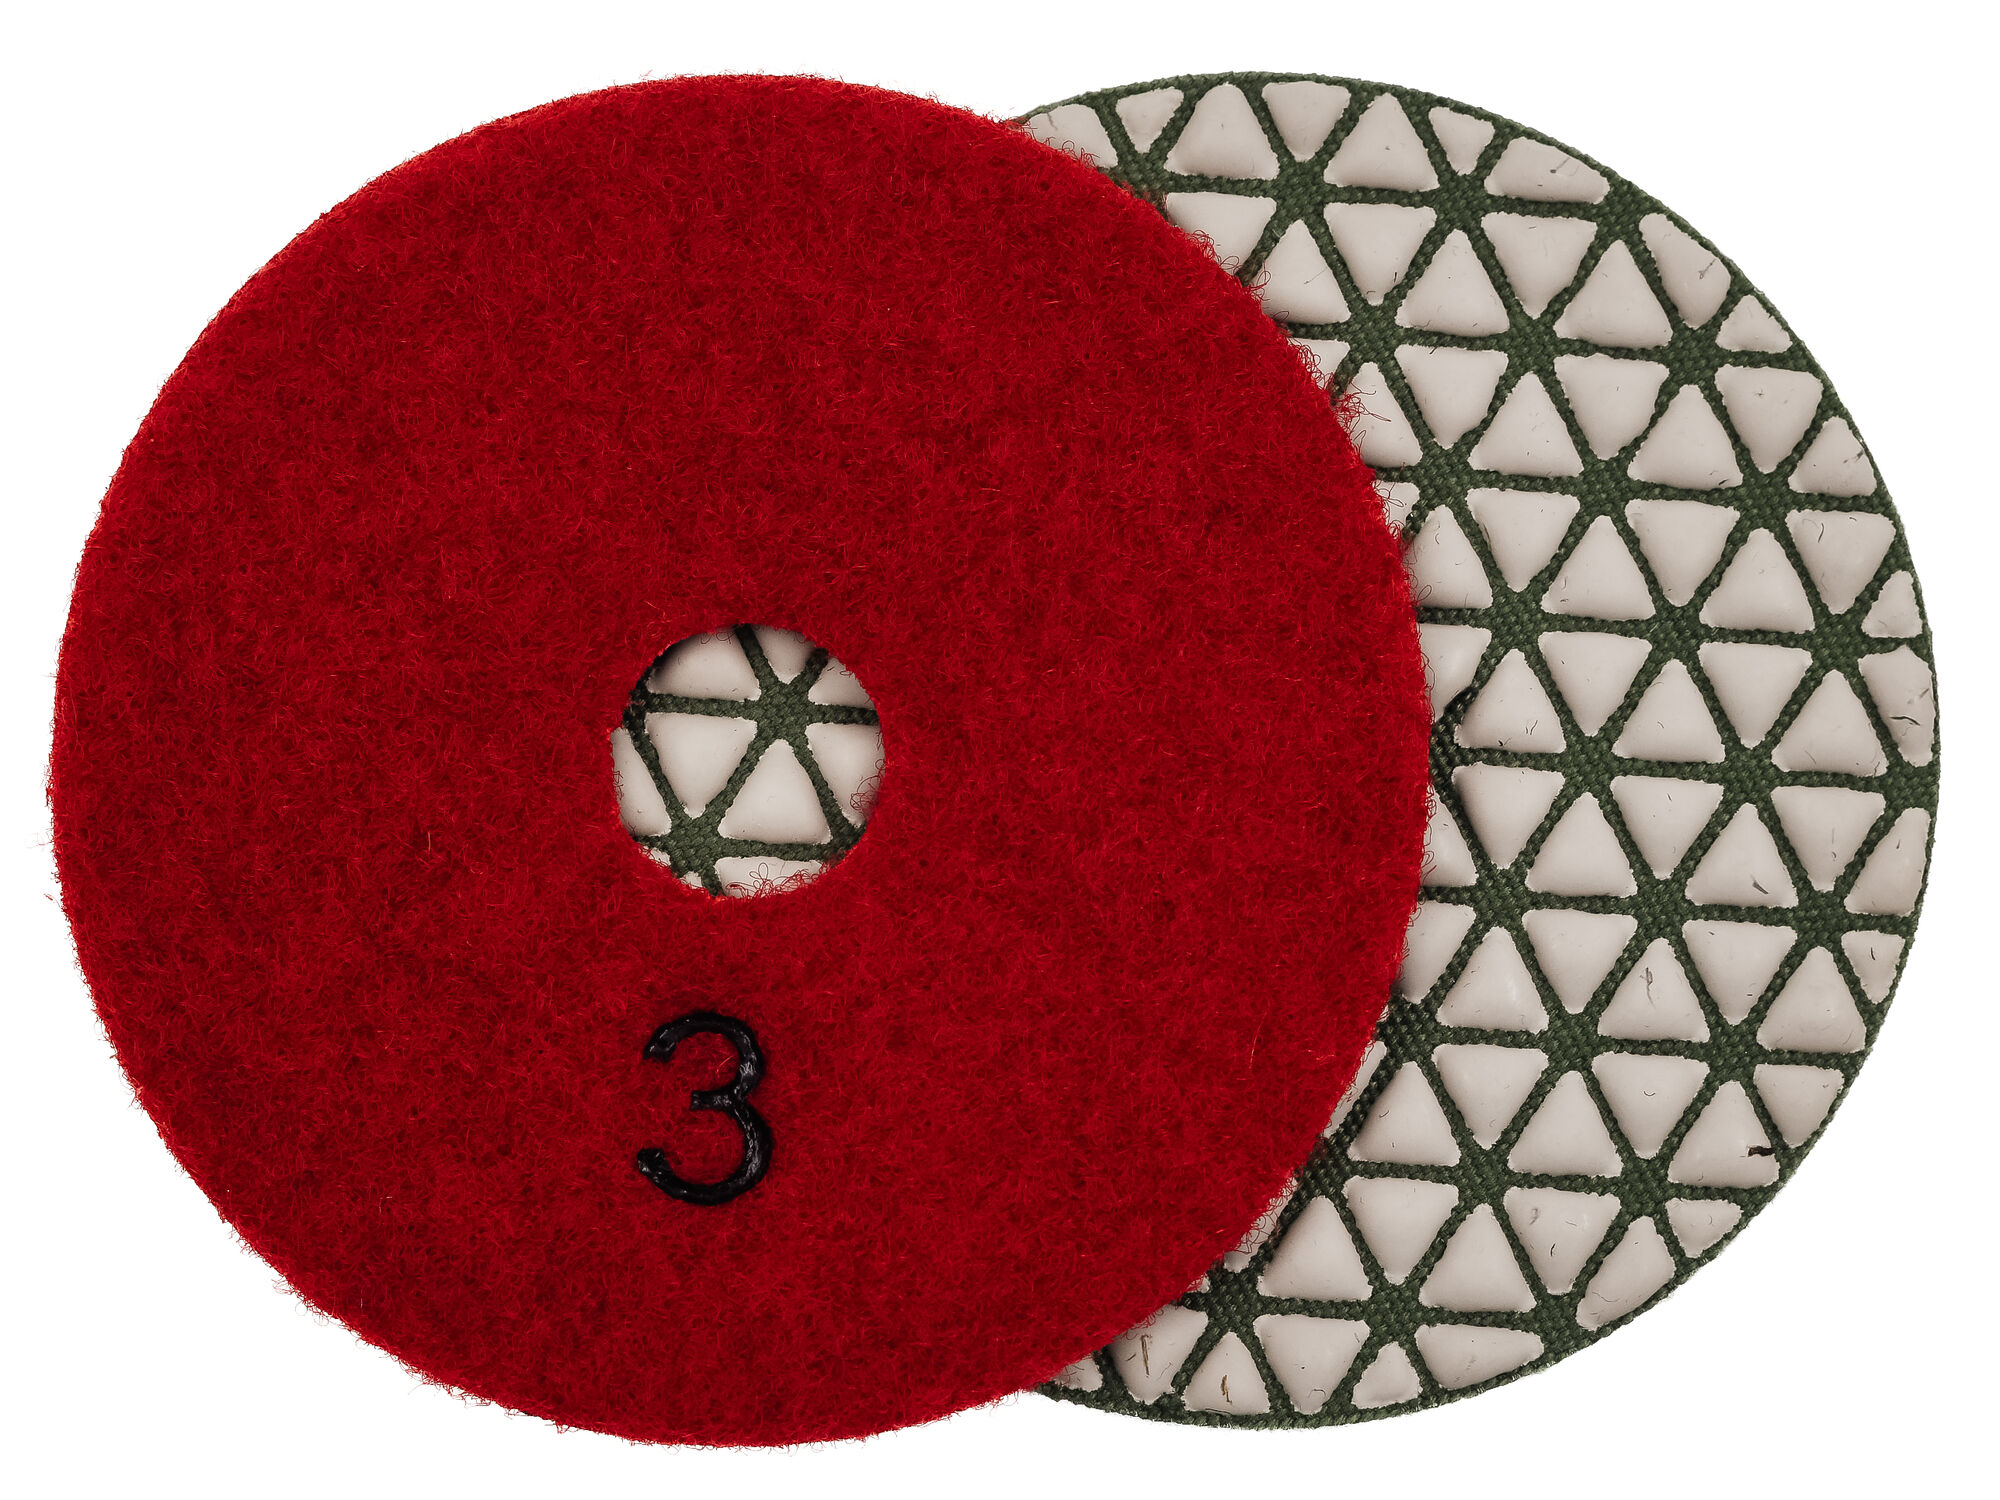 Алмазные гибкие шлифовальные диски №3 Ø 100 сухие "треугольники" JANE 5 номеров 1 шт